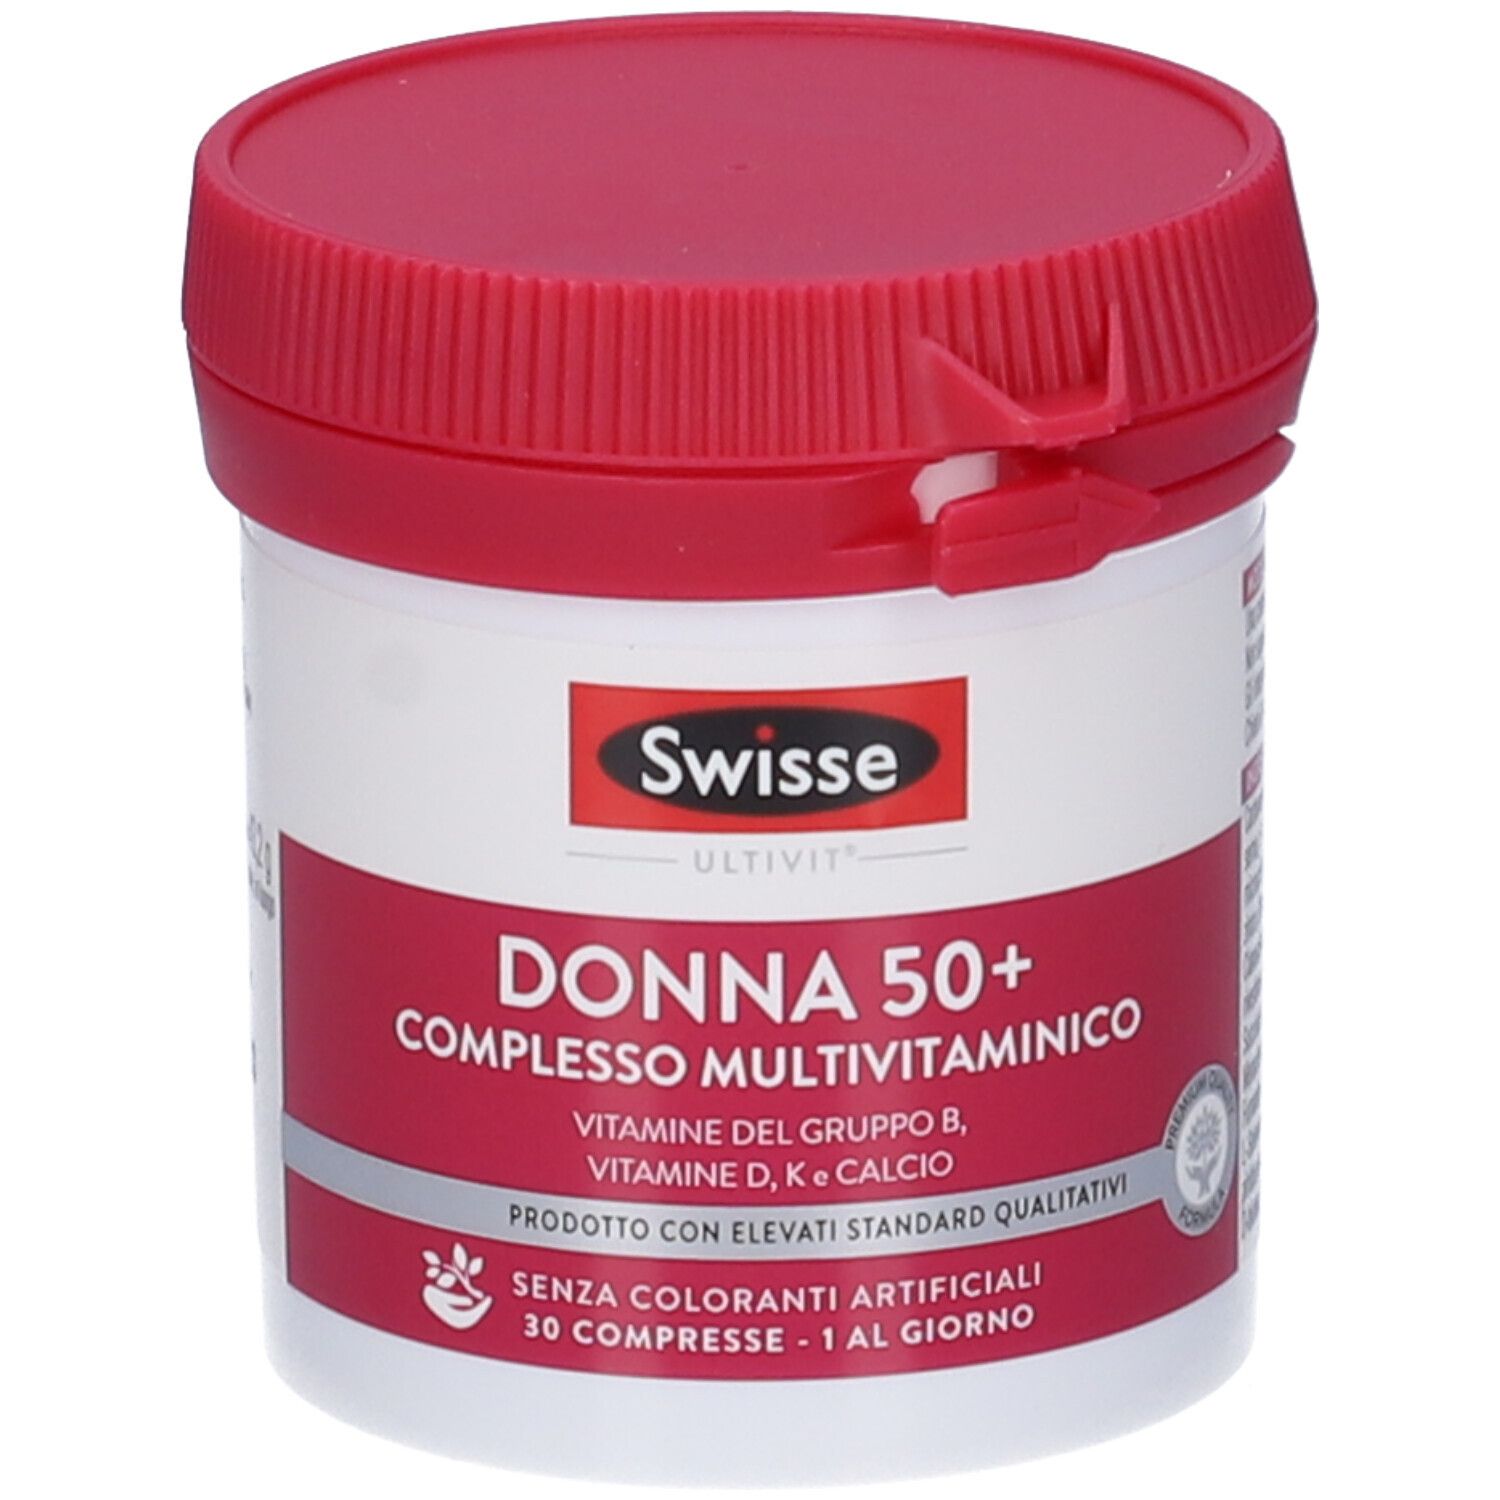 SWISSE Donna 50+ Complesso Multivitaminico